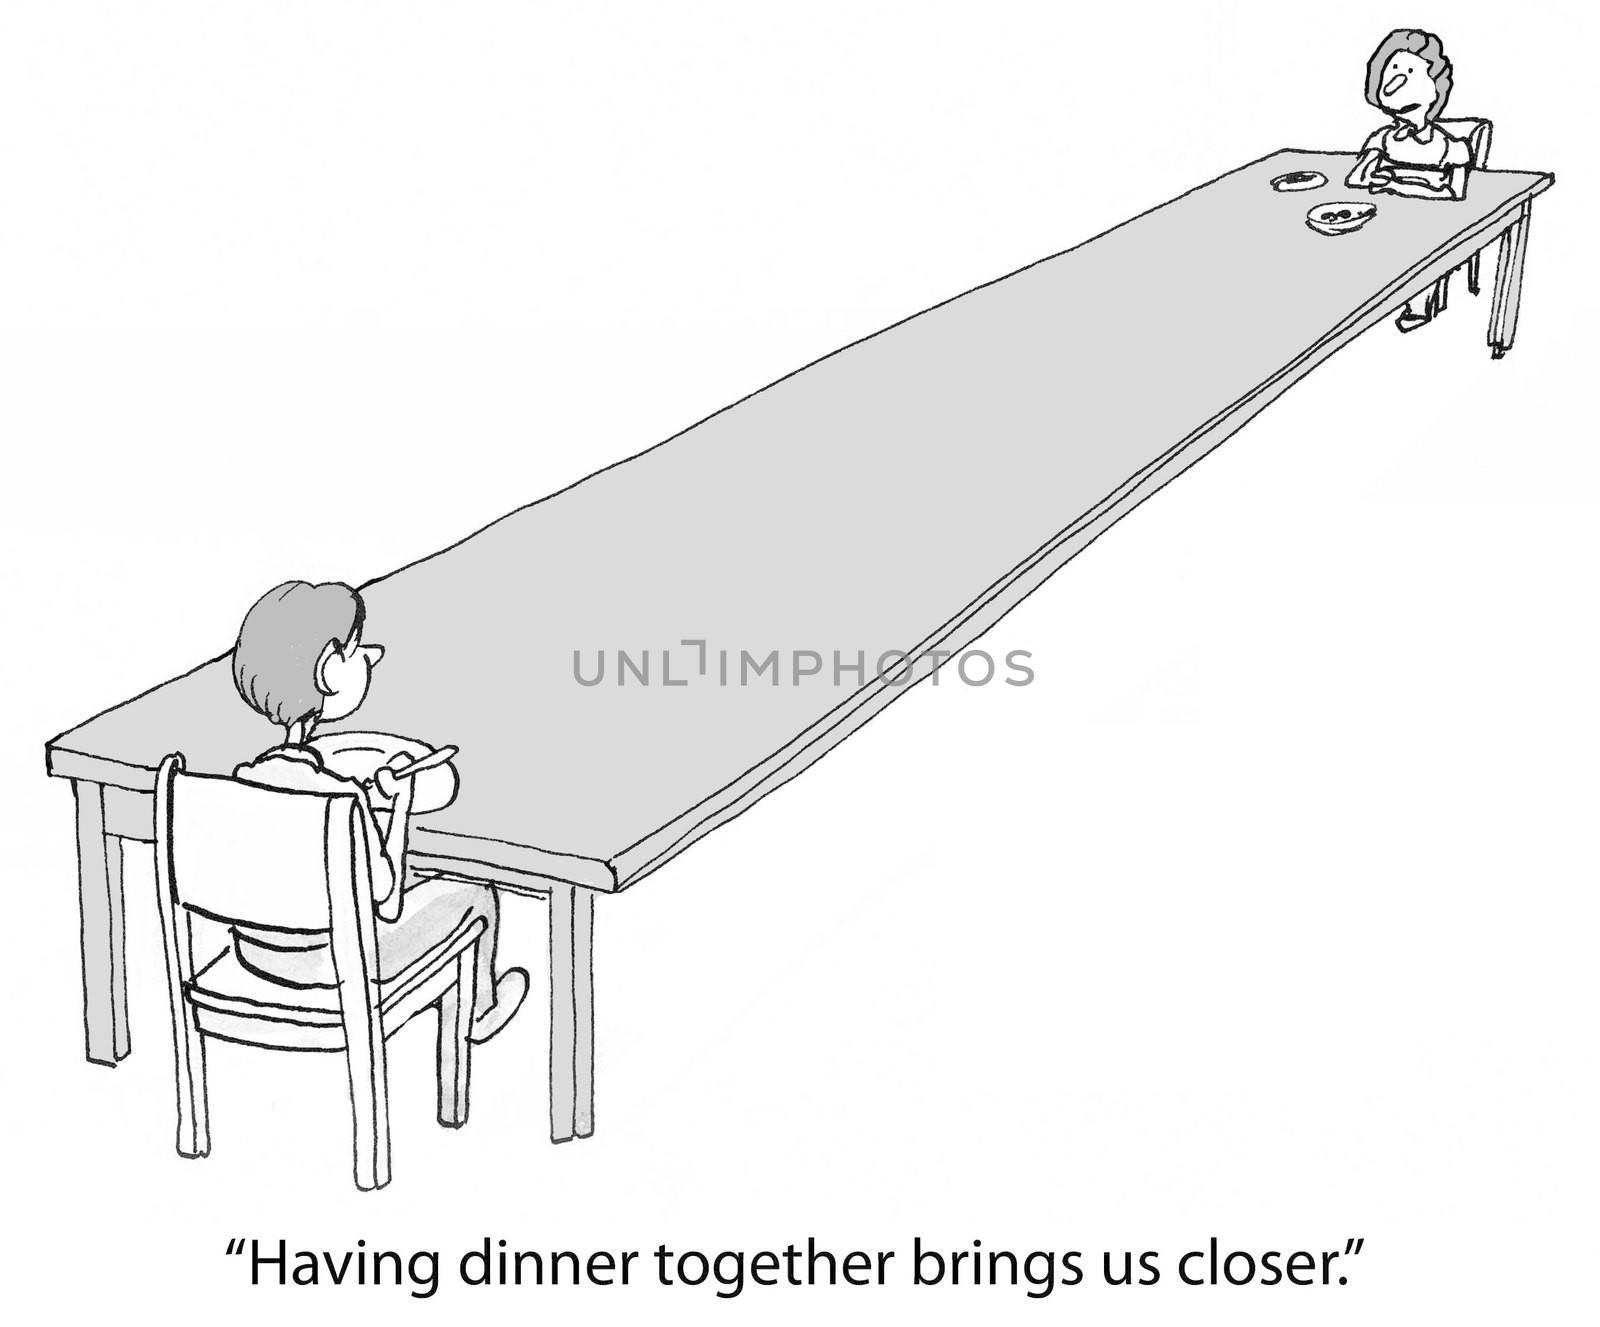 "Having dinner together brings us closer."